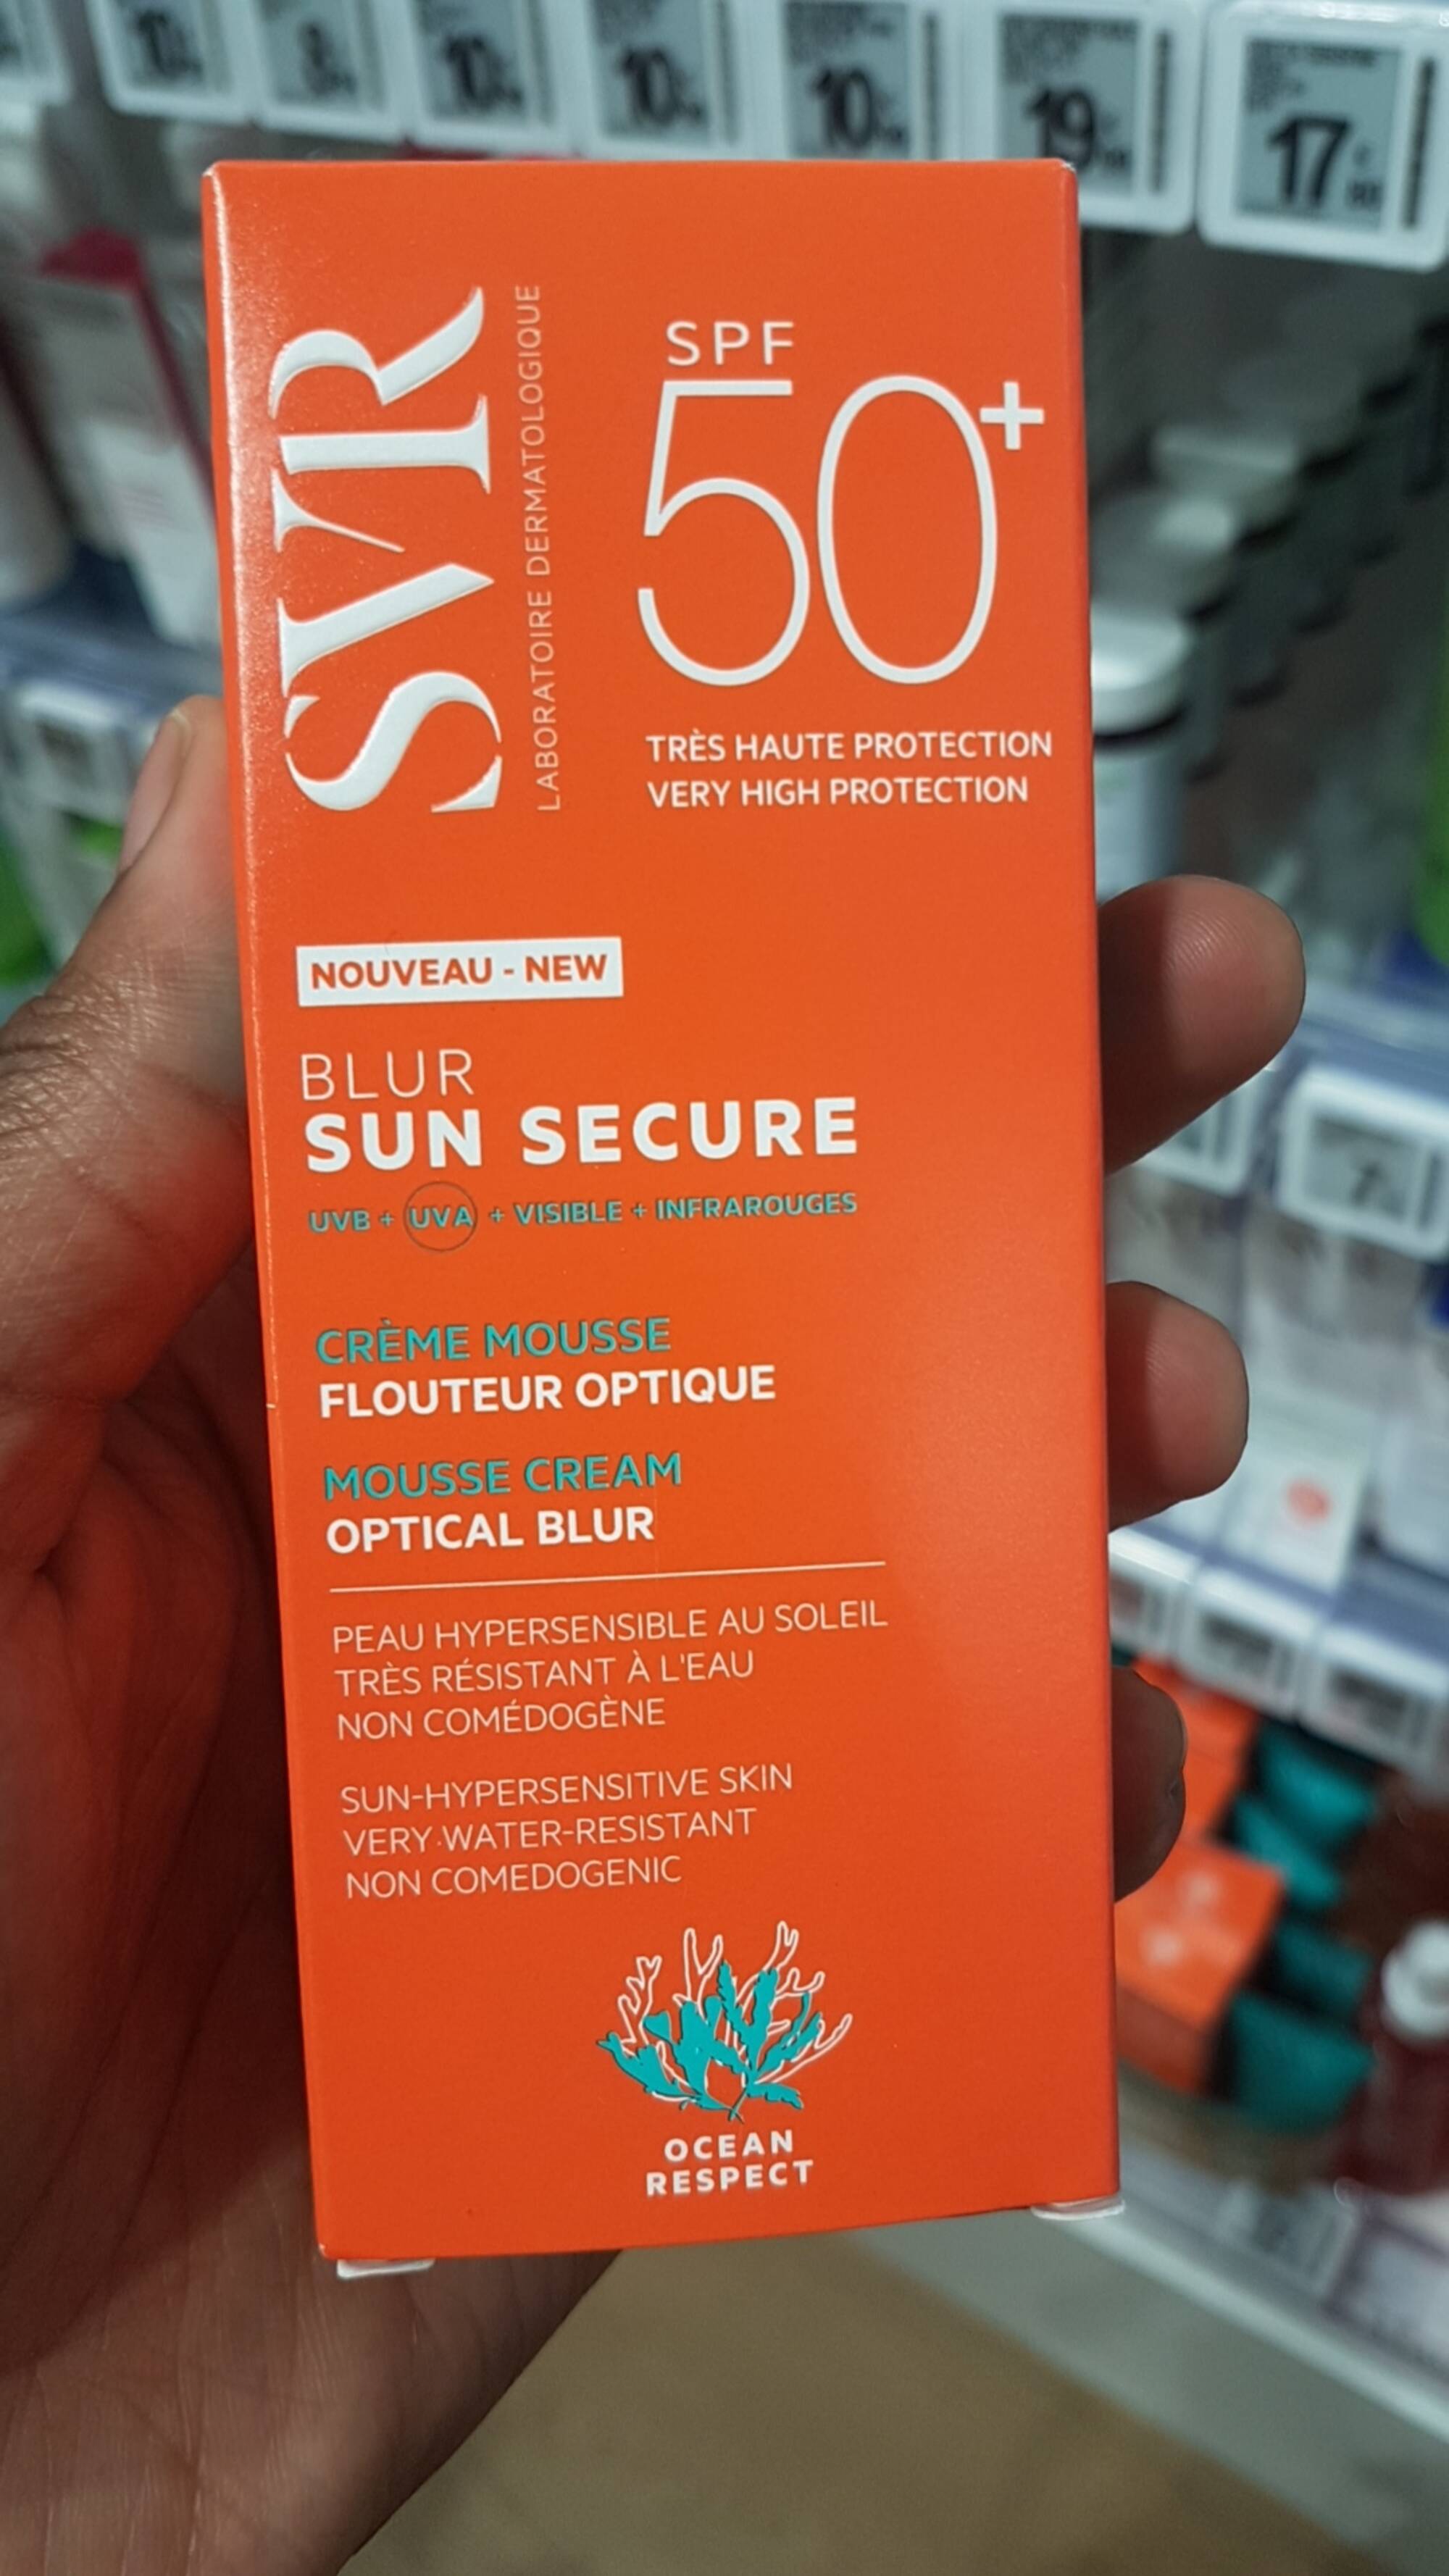 SVR - Blur sun secrue - Crème mousse flouteur optique spf 50+